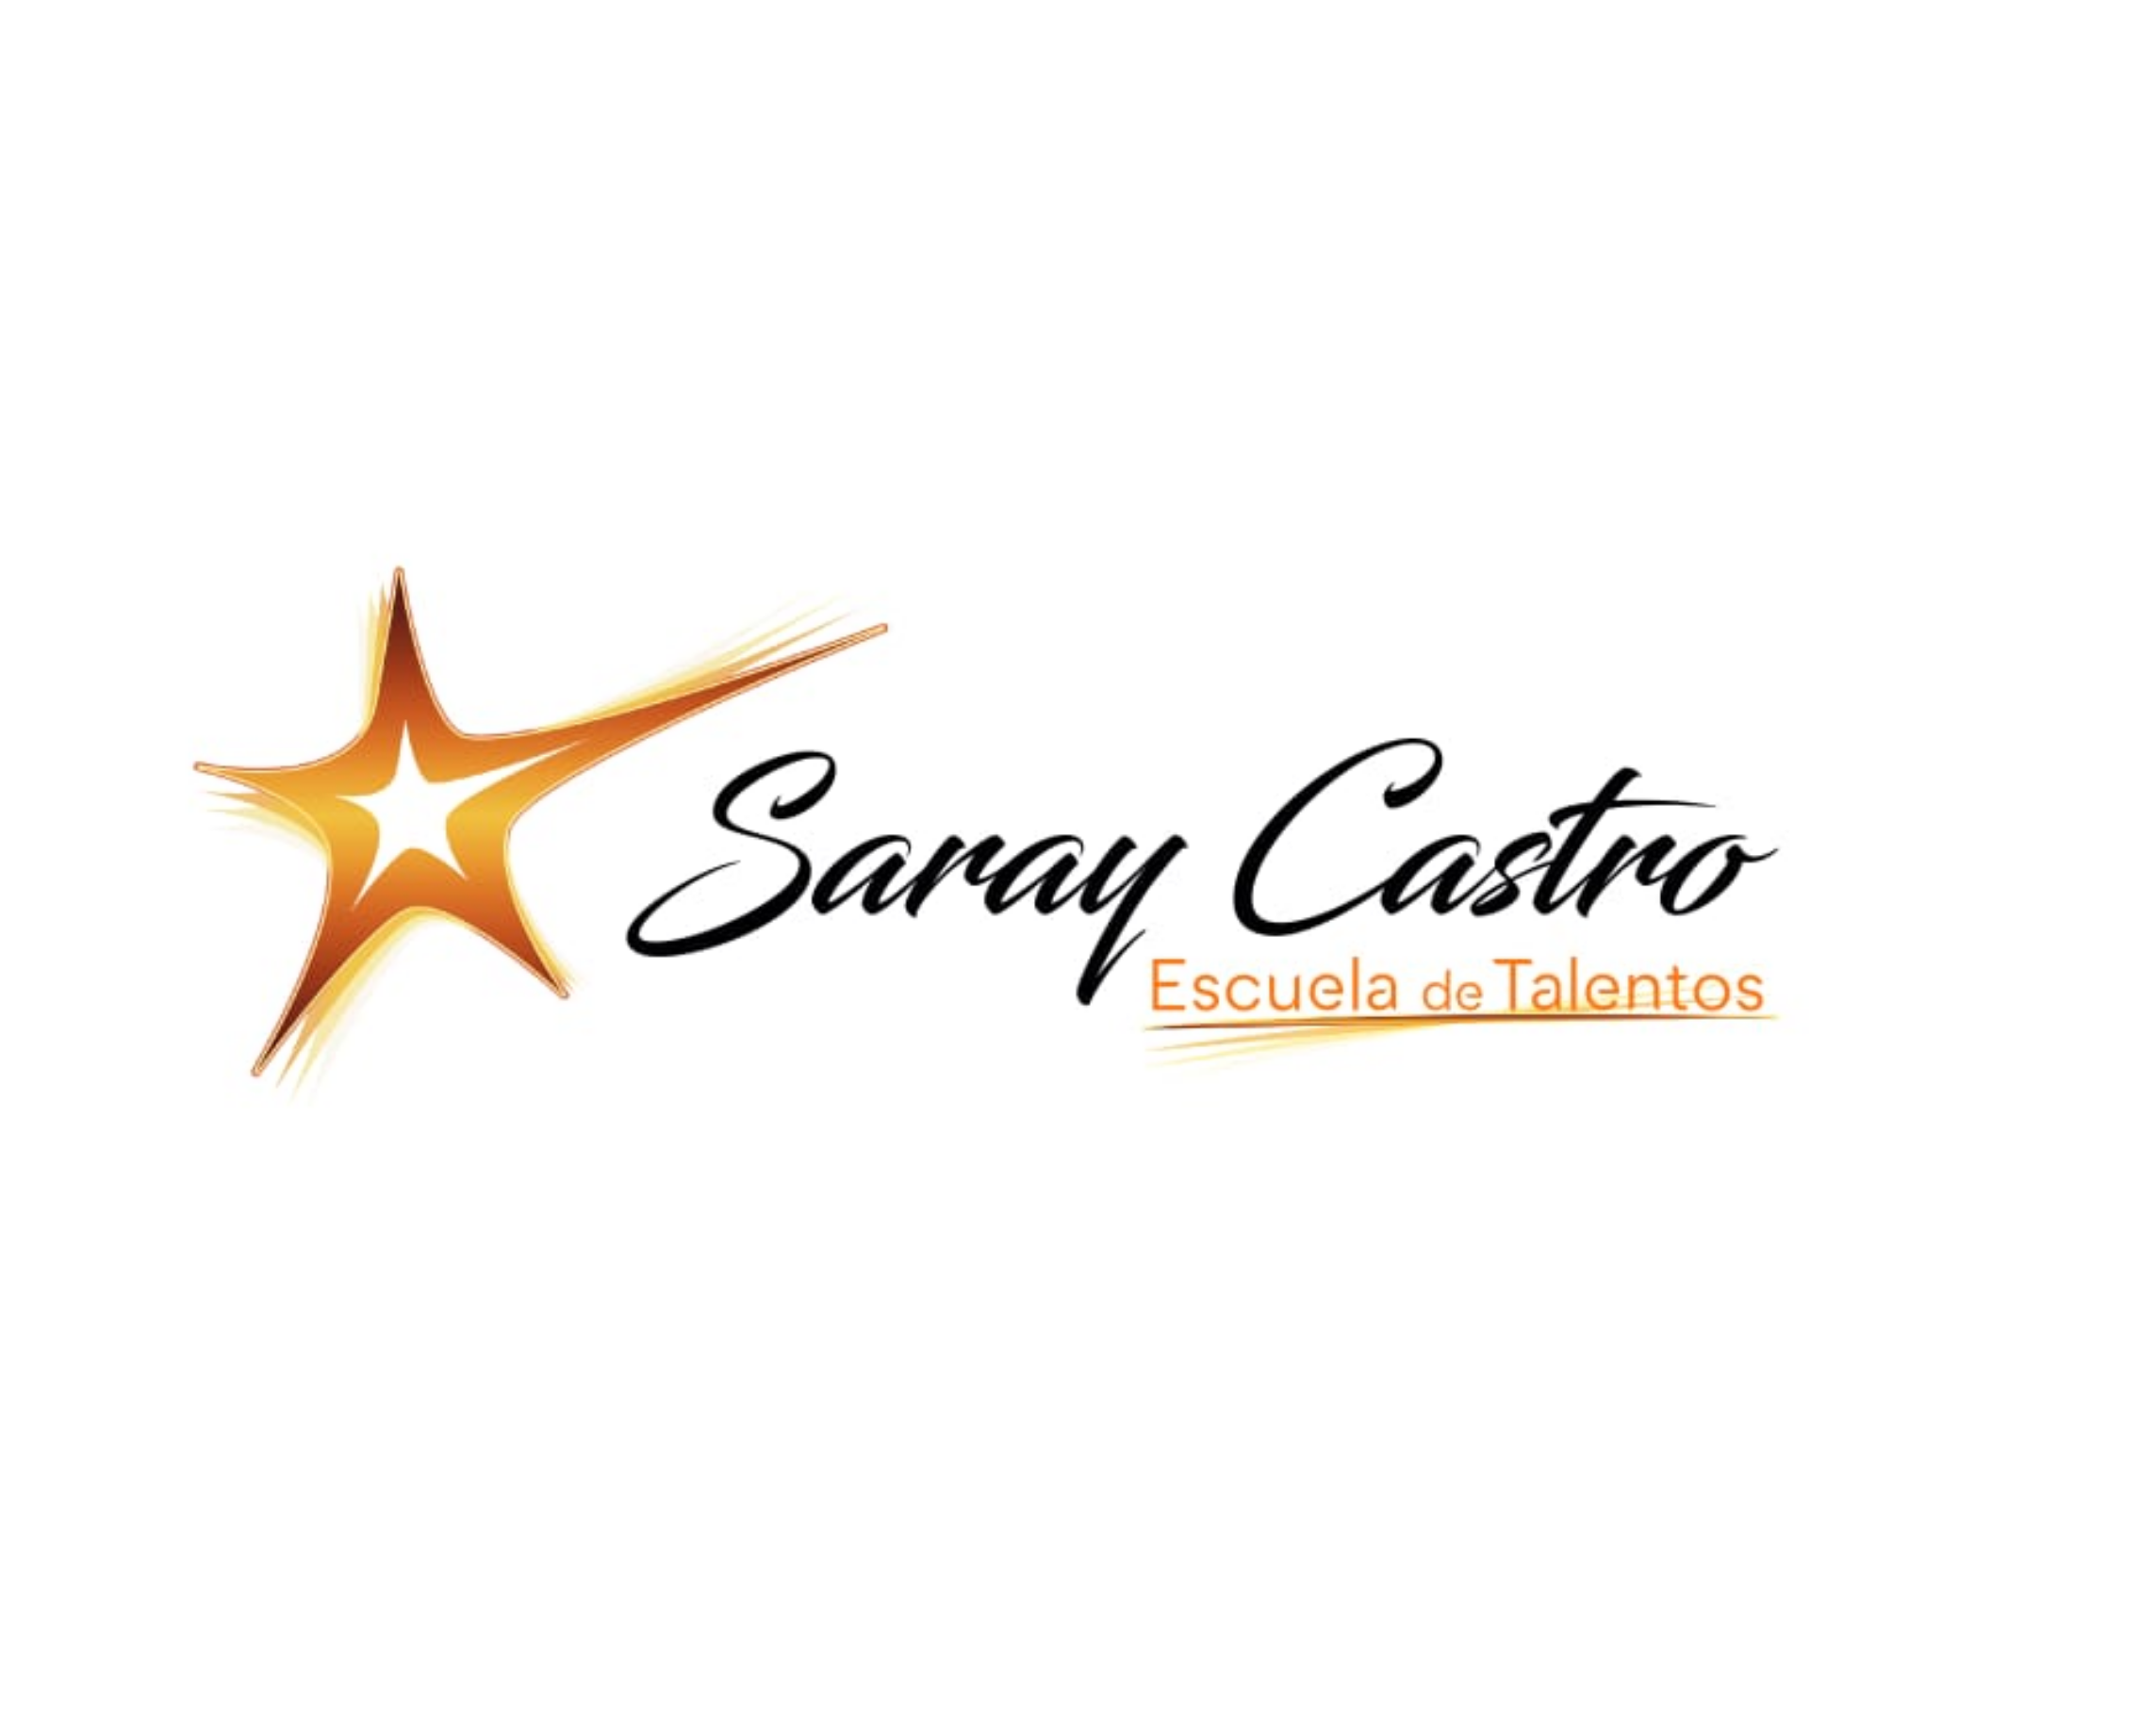 Logo Escuela de Talentos Saray Castro